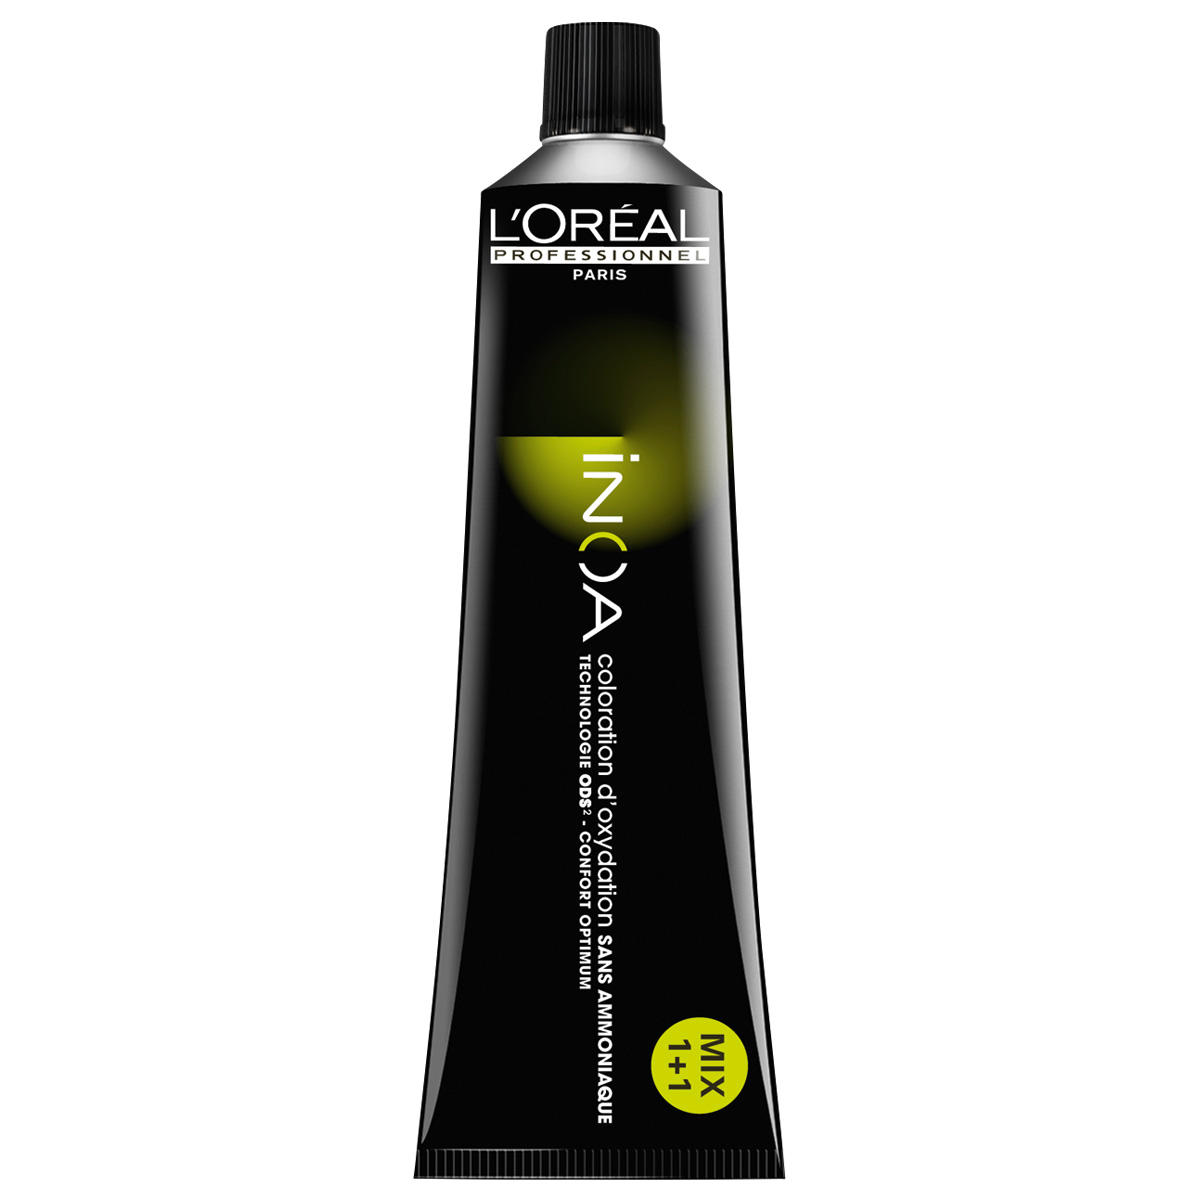 L'Oréal Professionnel Paris Coloration 7.1 Medium Blond As, Tube 60 ml - 1